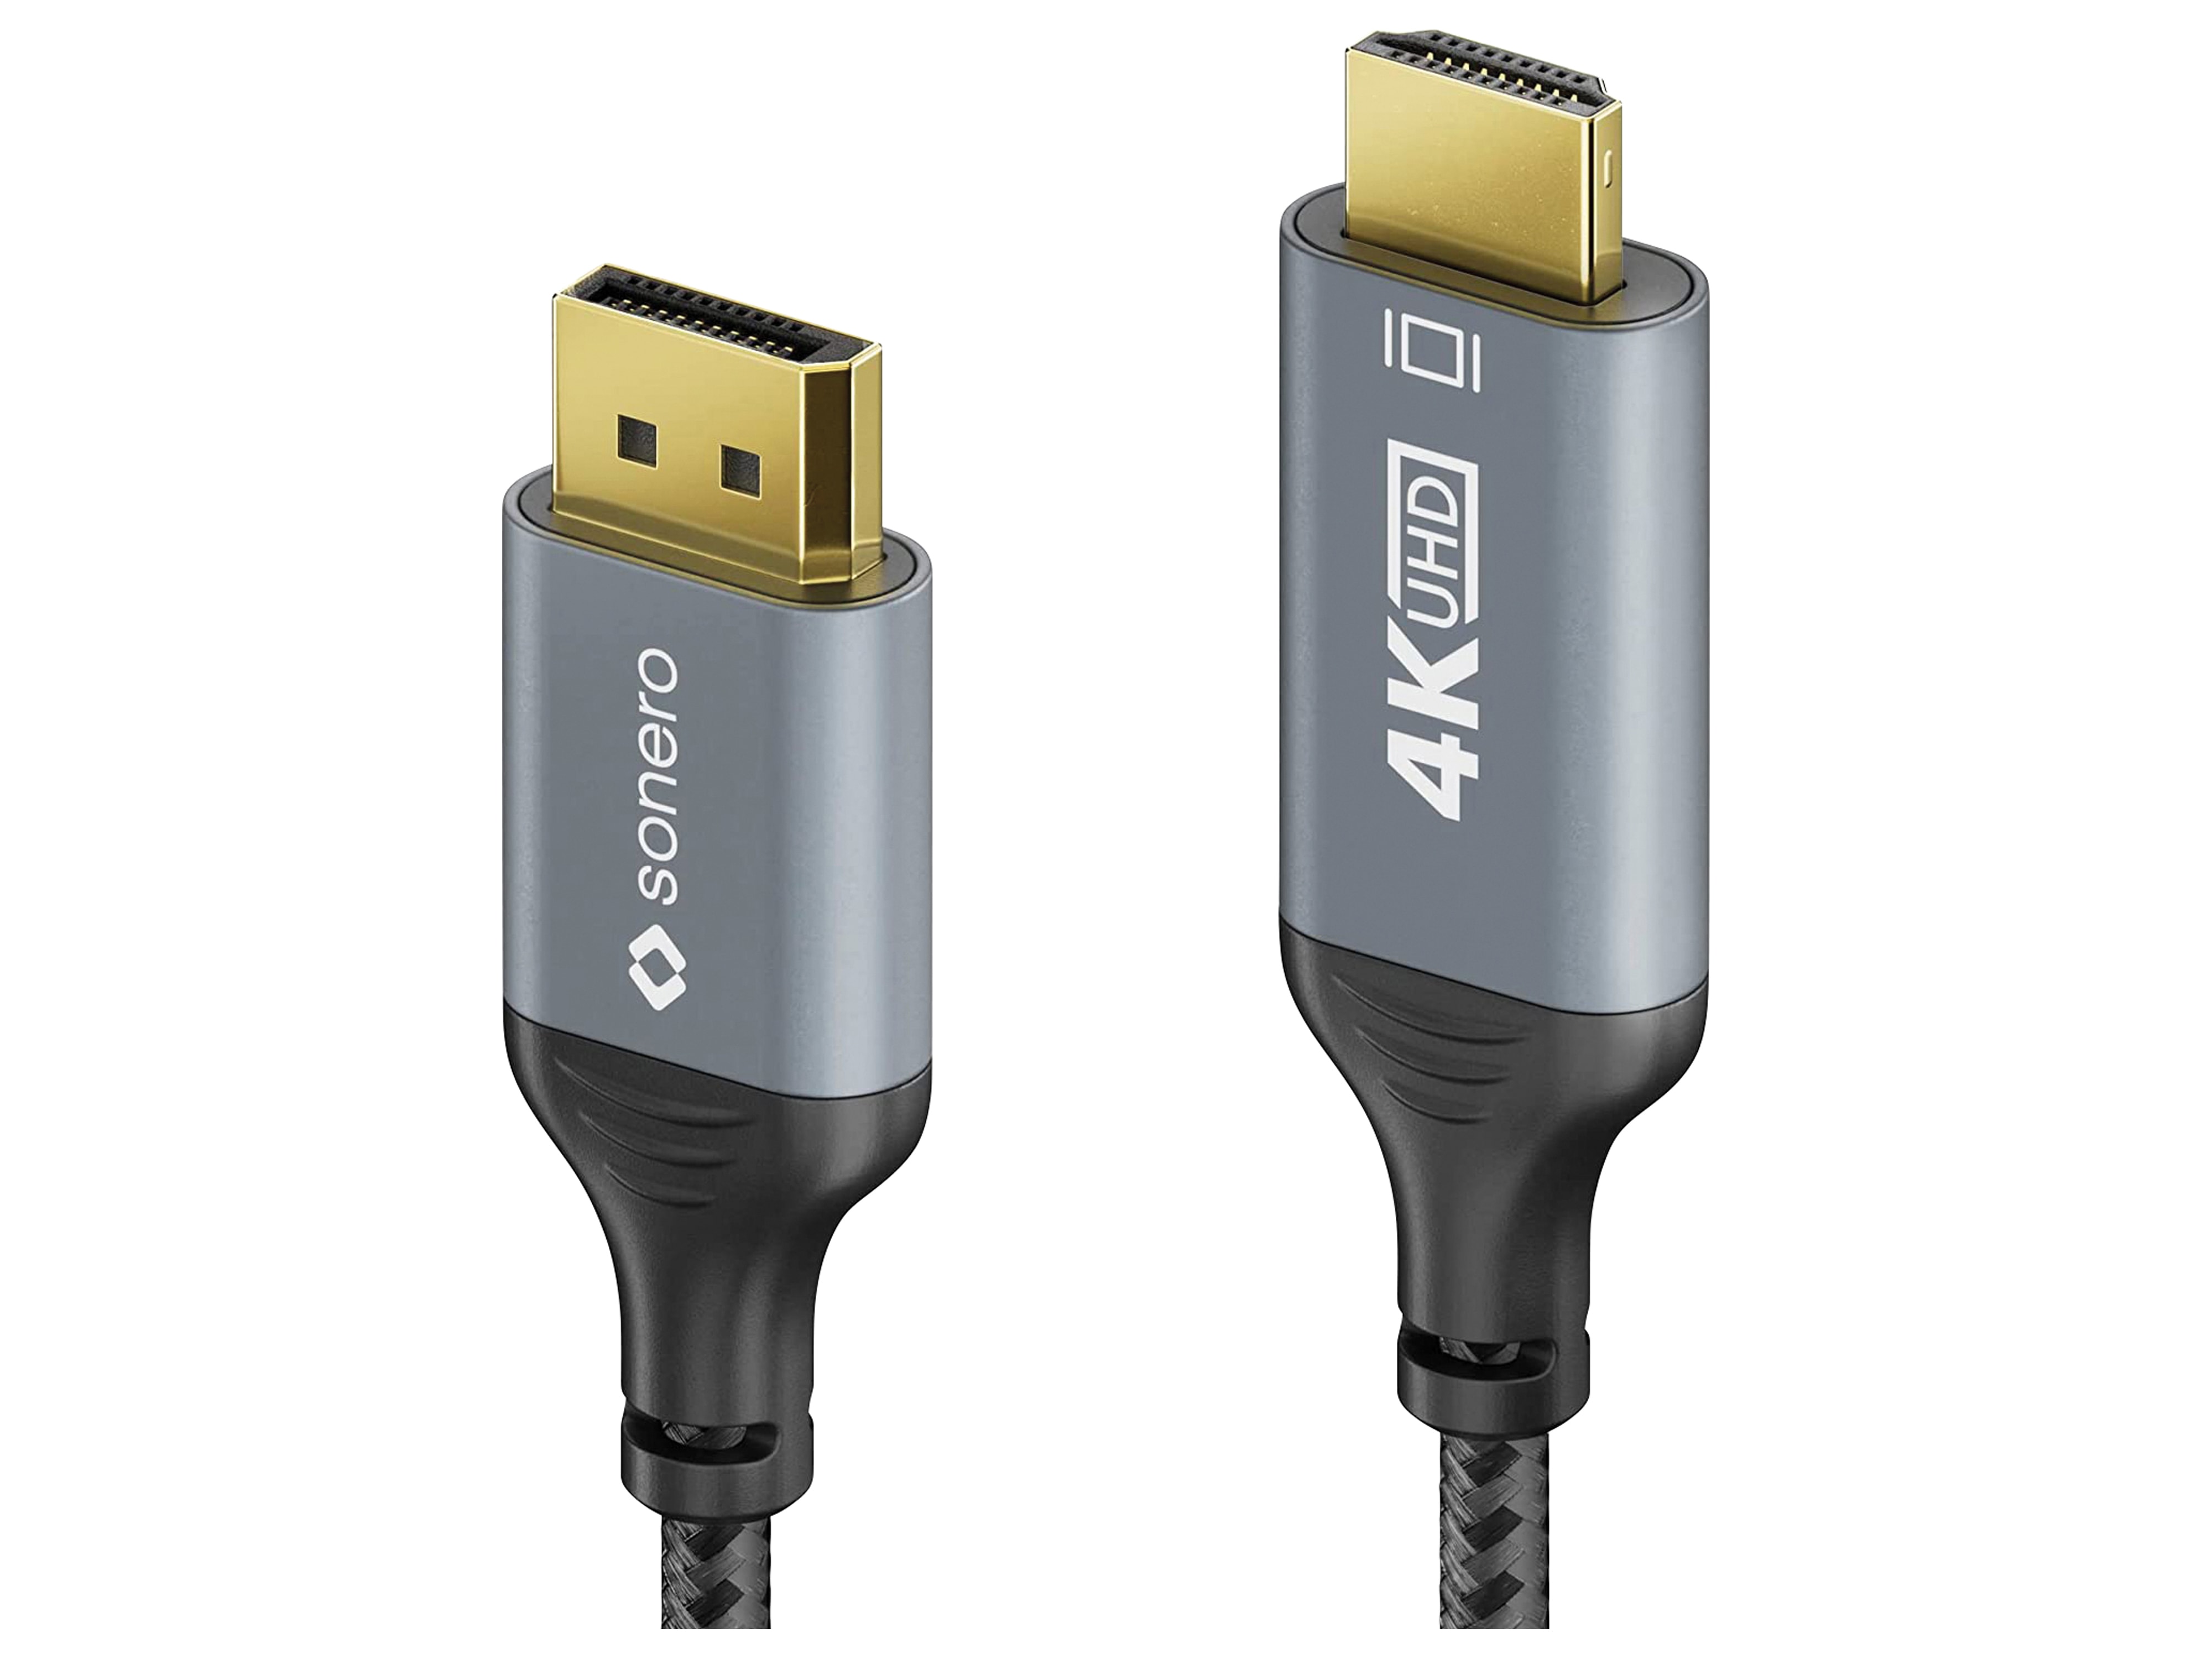 SONERO DisplayPort-Kabel, DP/HDMI, Stecker/Stecker, 4K60, grau/schwarz, 2 m